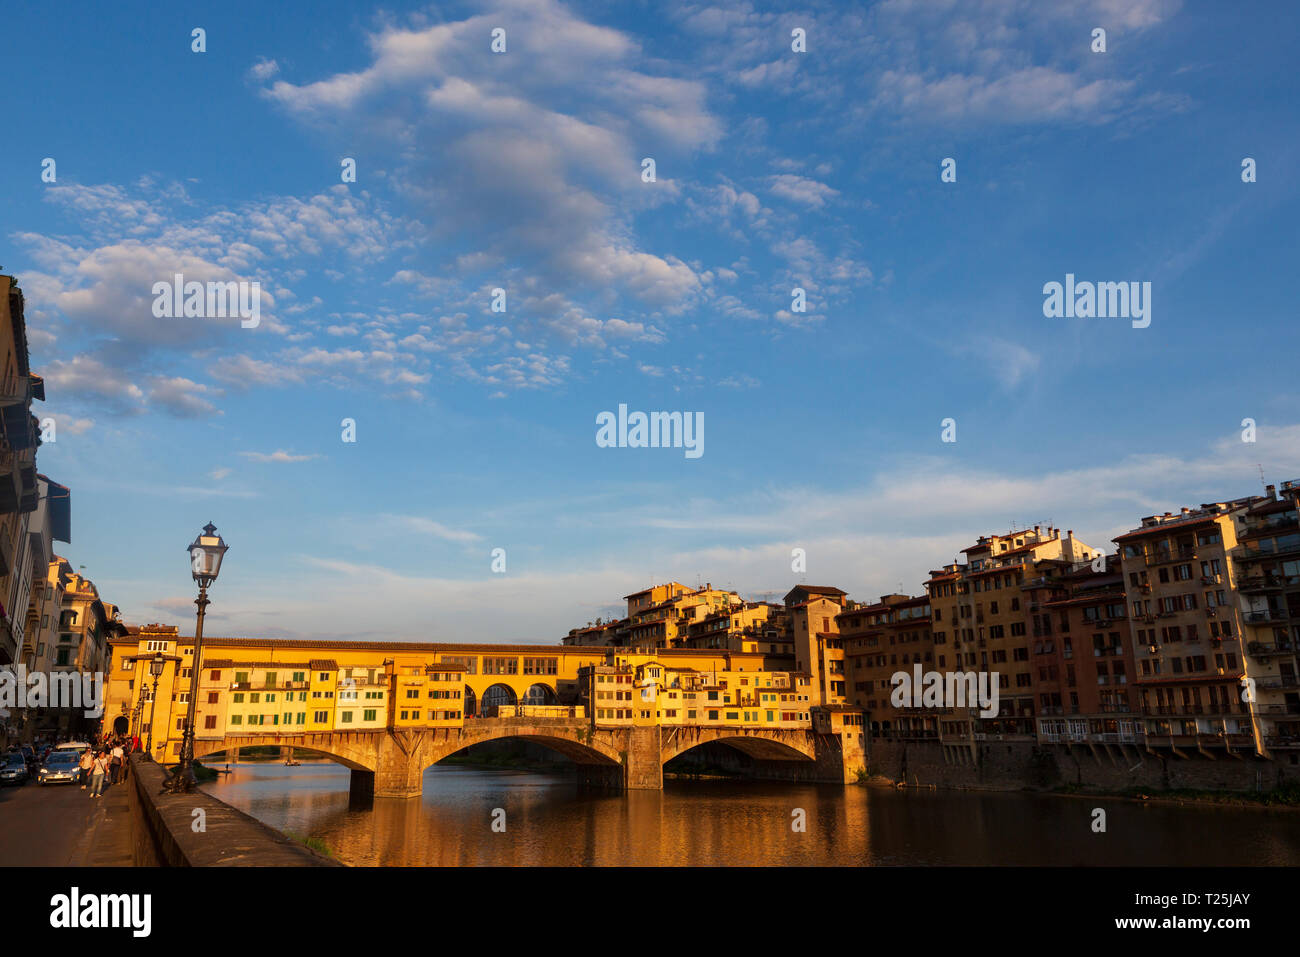 Der Ponte Vecchio, eine mittelalterliche Stein geschlossen - brüstungs Segmentbogen Brücke über den Fluss Arno in Florenz, Italien, bekannt für noch in Läden gebaut Stockfoto